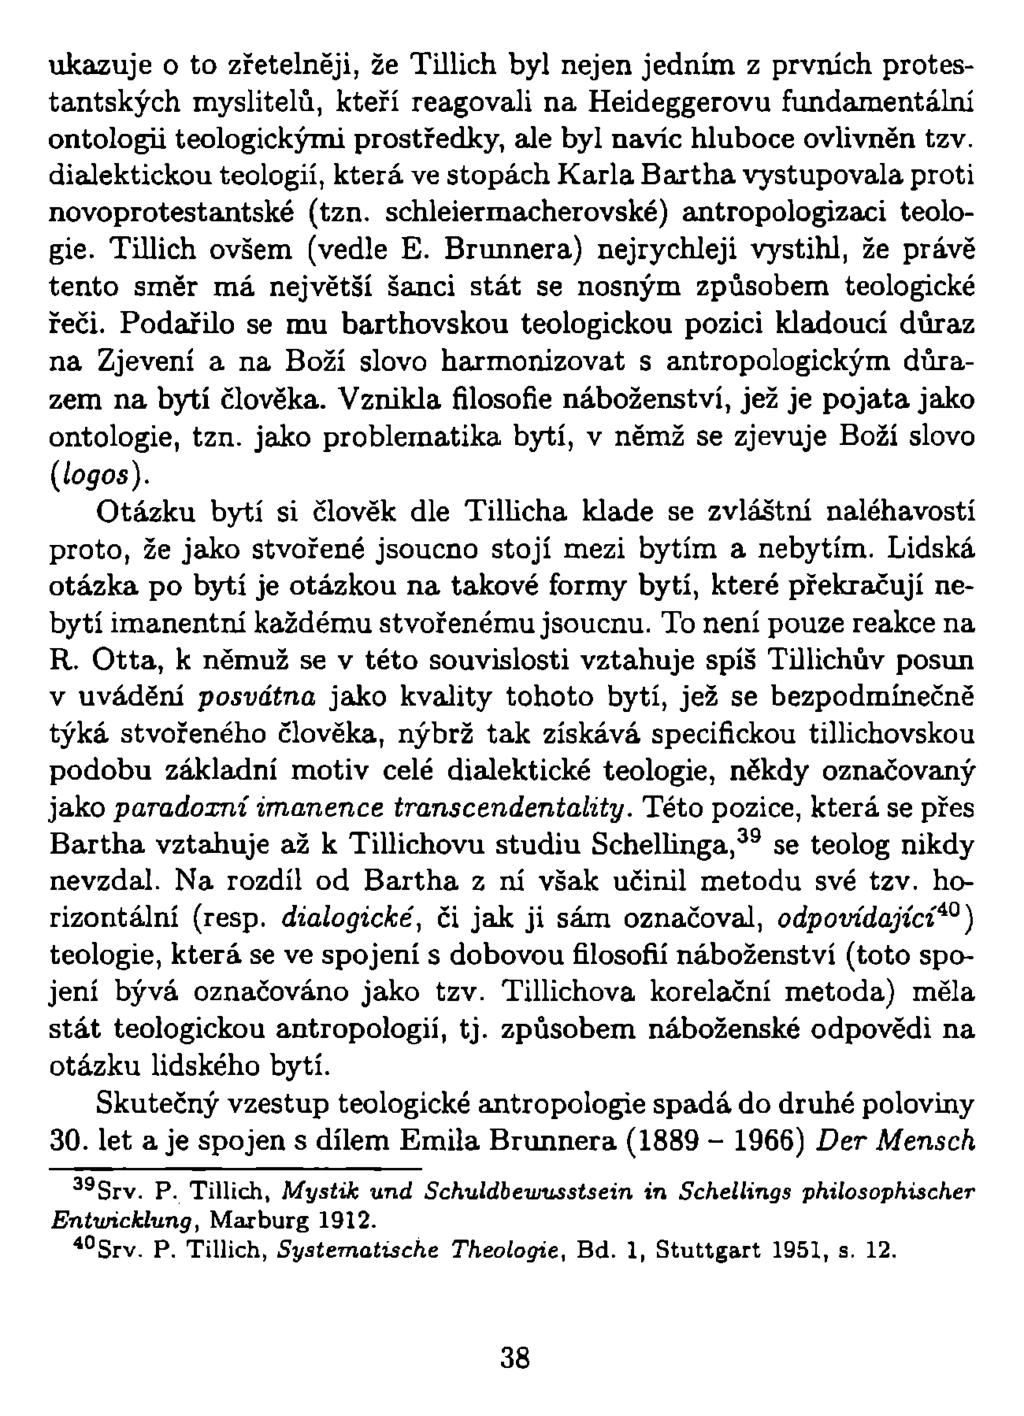 ukazuje o to zřetelněji, že Tillich byl nejen jedním z prvních protestantských myslitelů, kteří reagovali na Heideggerovu fundamentální ontologii teologickými prostředky, ale byl navíc hluboce